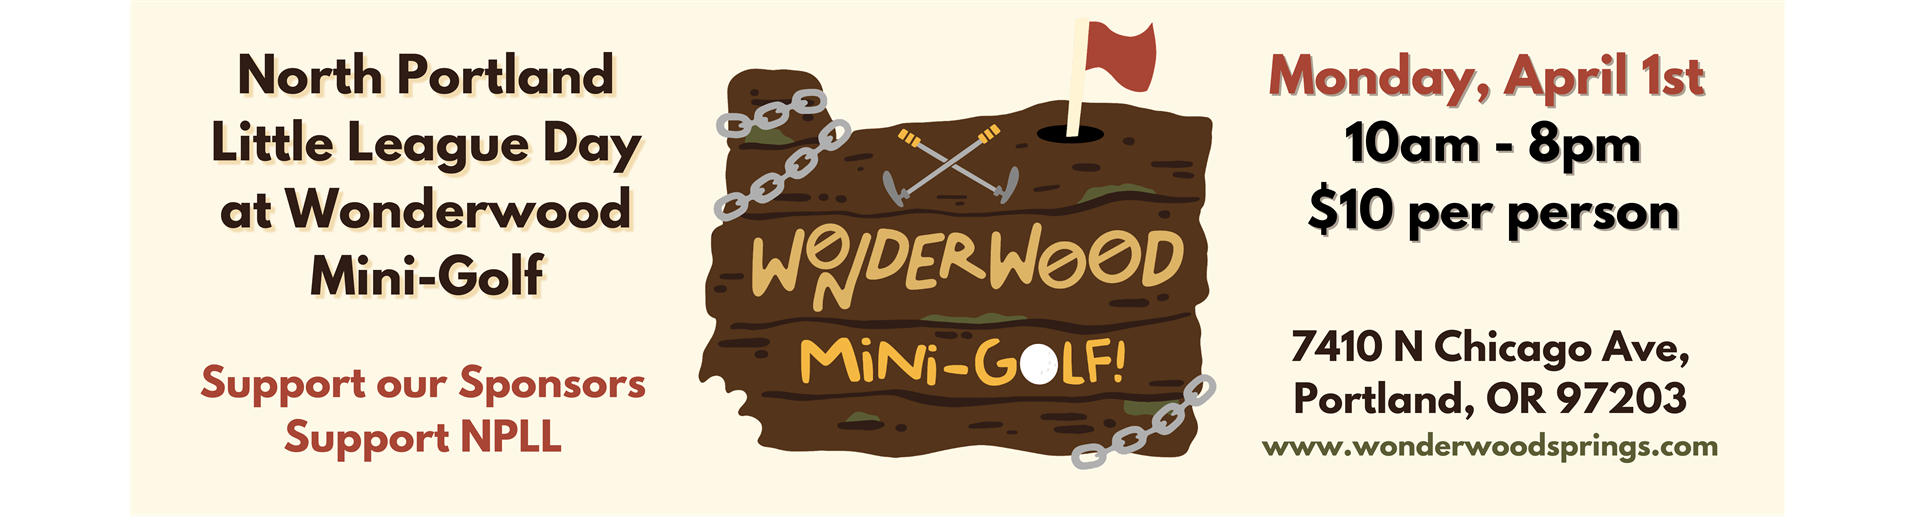 NPLL Day at Wonderwood Mini-Golf